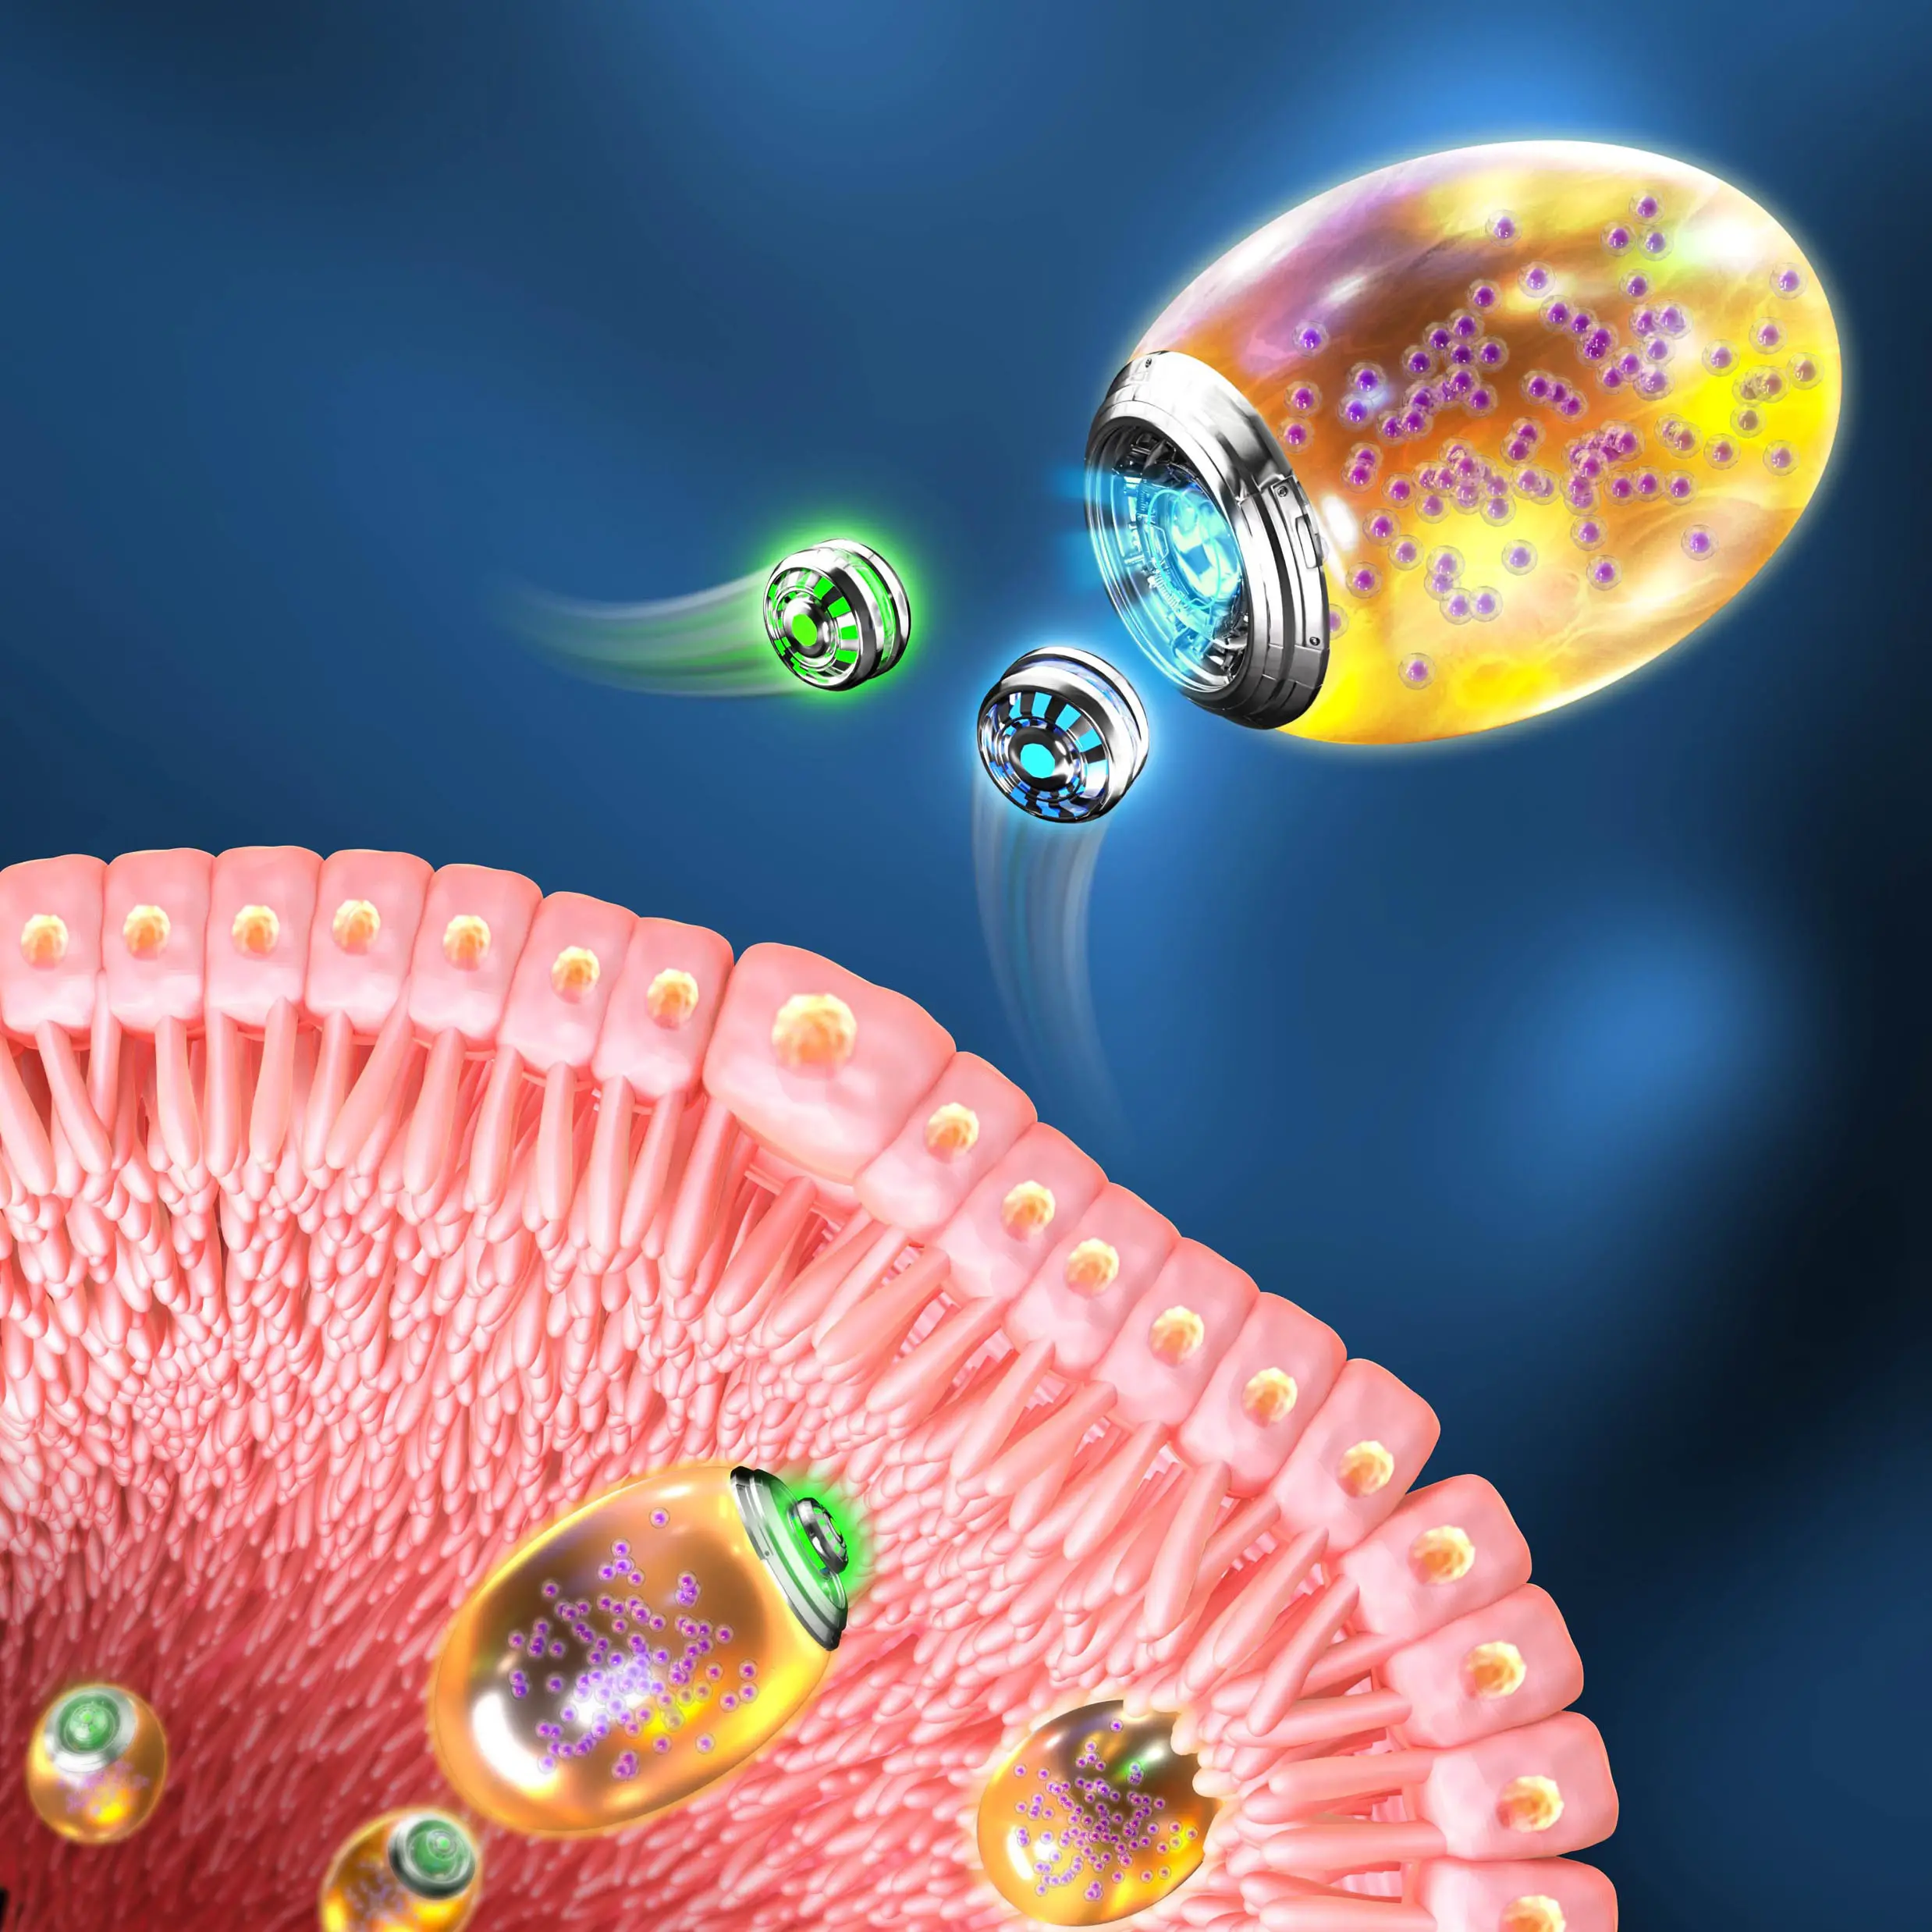 Revolucionarios nanorobots de doble biomotor para el tratamiento de la inflamación gastrointestinal